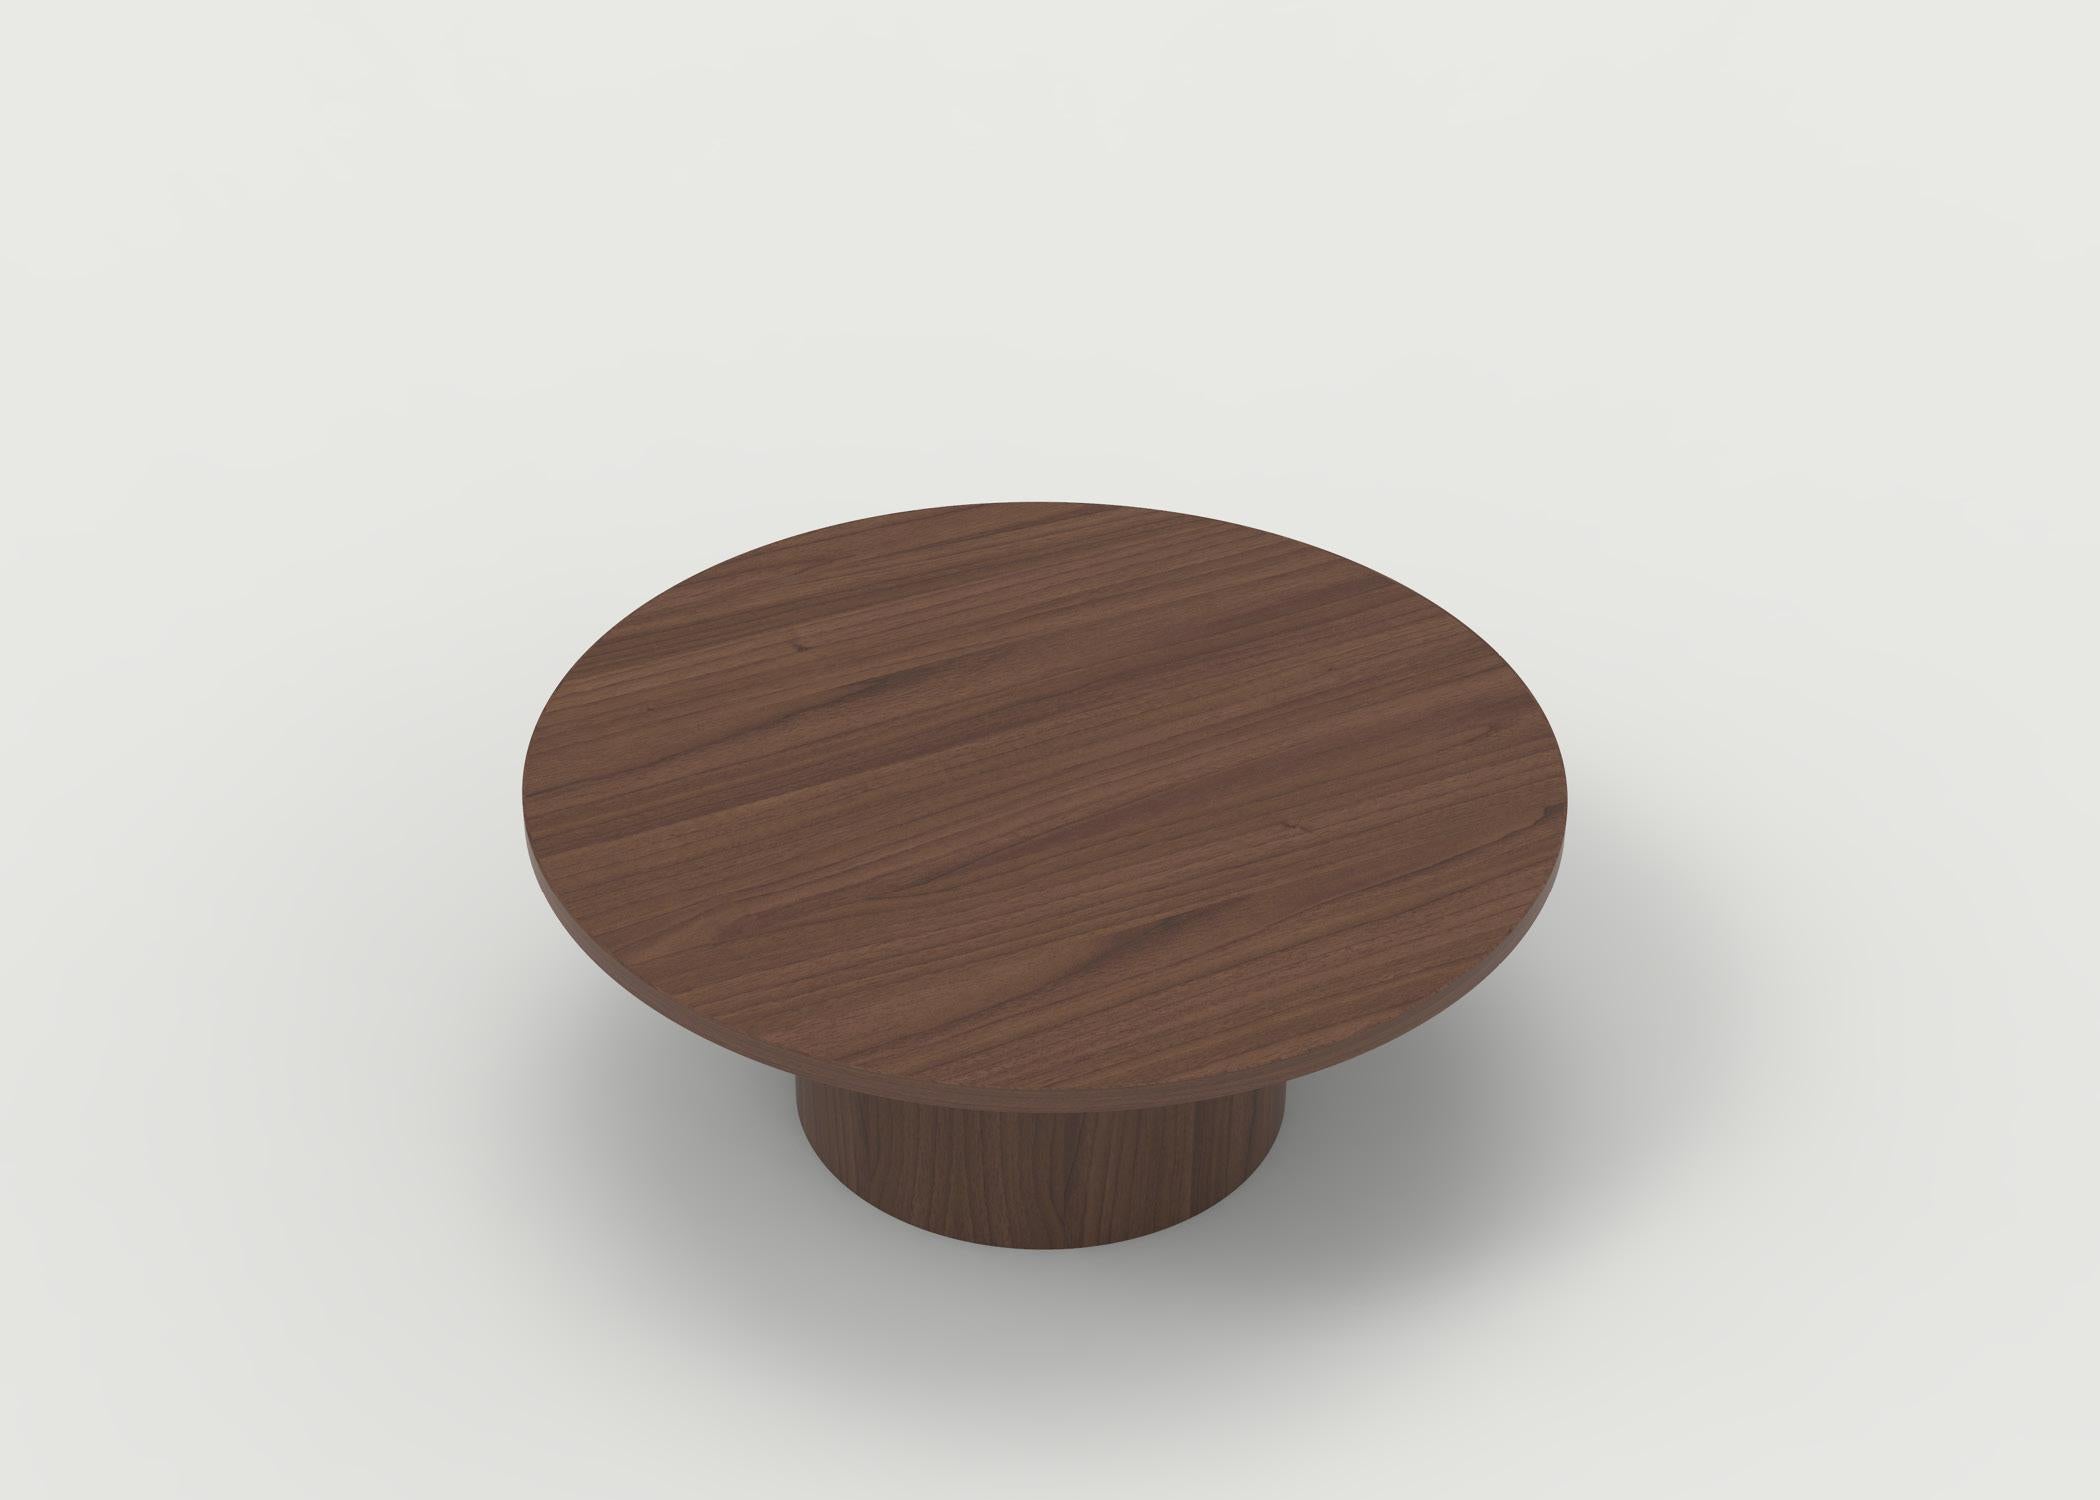 Der Couchtisch Benson ist mit einer Platte aus Eichenholz in Naturfarbe mit einem runden Sockel und lackierten runden Pfosten abgebildet. Er kann in Holz und Ausführung sowie in der Größe Ihrer Wahl angepasst werden. Der Preis bezieht sich auf das